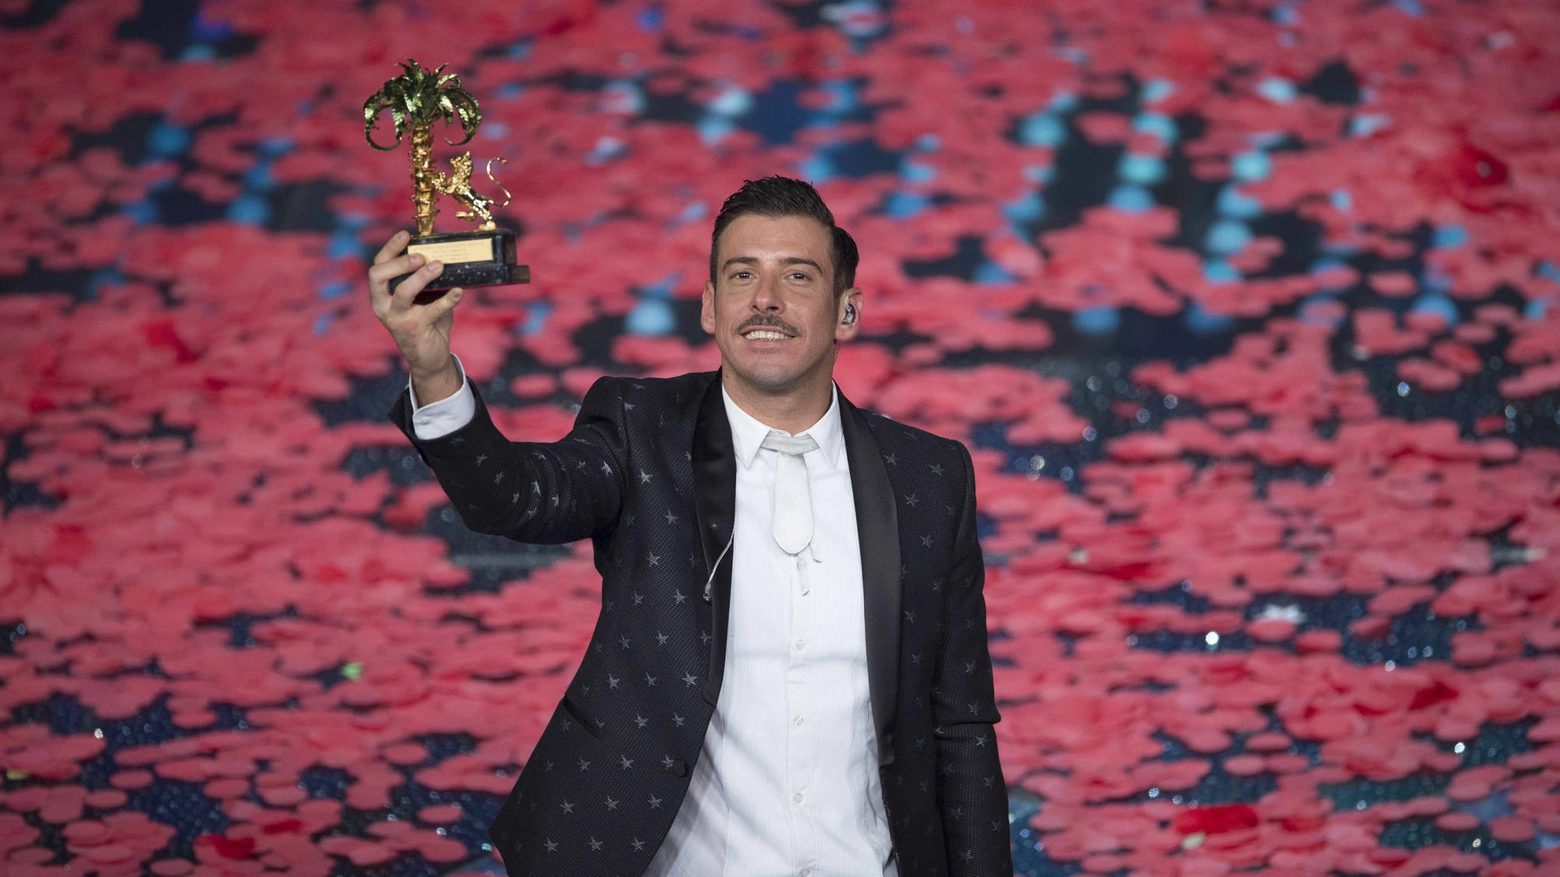 Francesco Gabbani, vincitore di Sanremo 2017, si esibirà a Sesto il 29 giugno